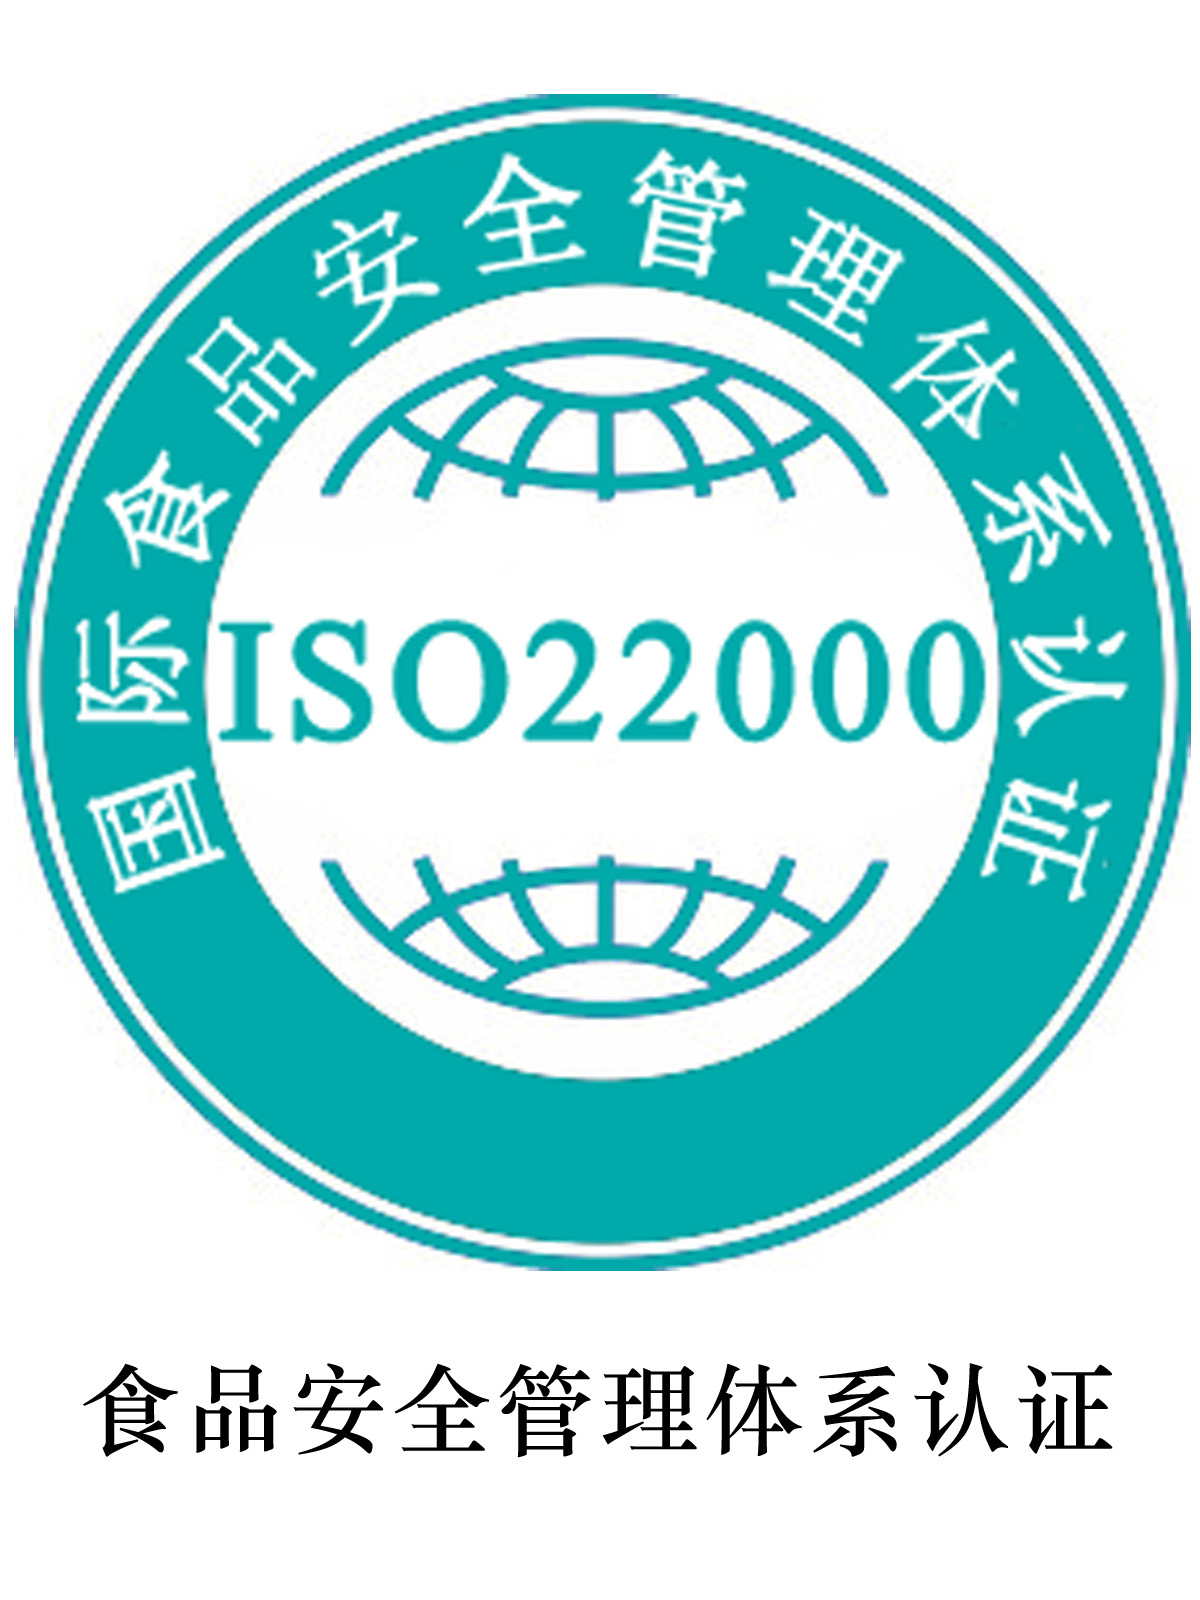 安顺ISO22000认证办理流程 需要的资料